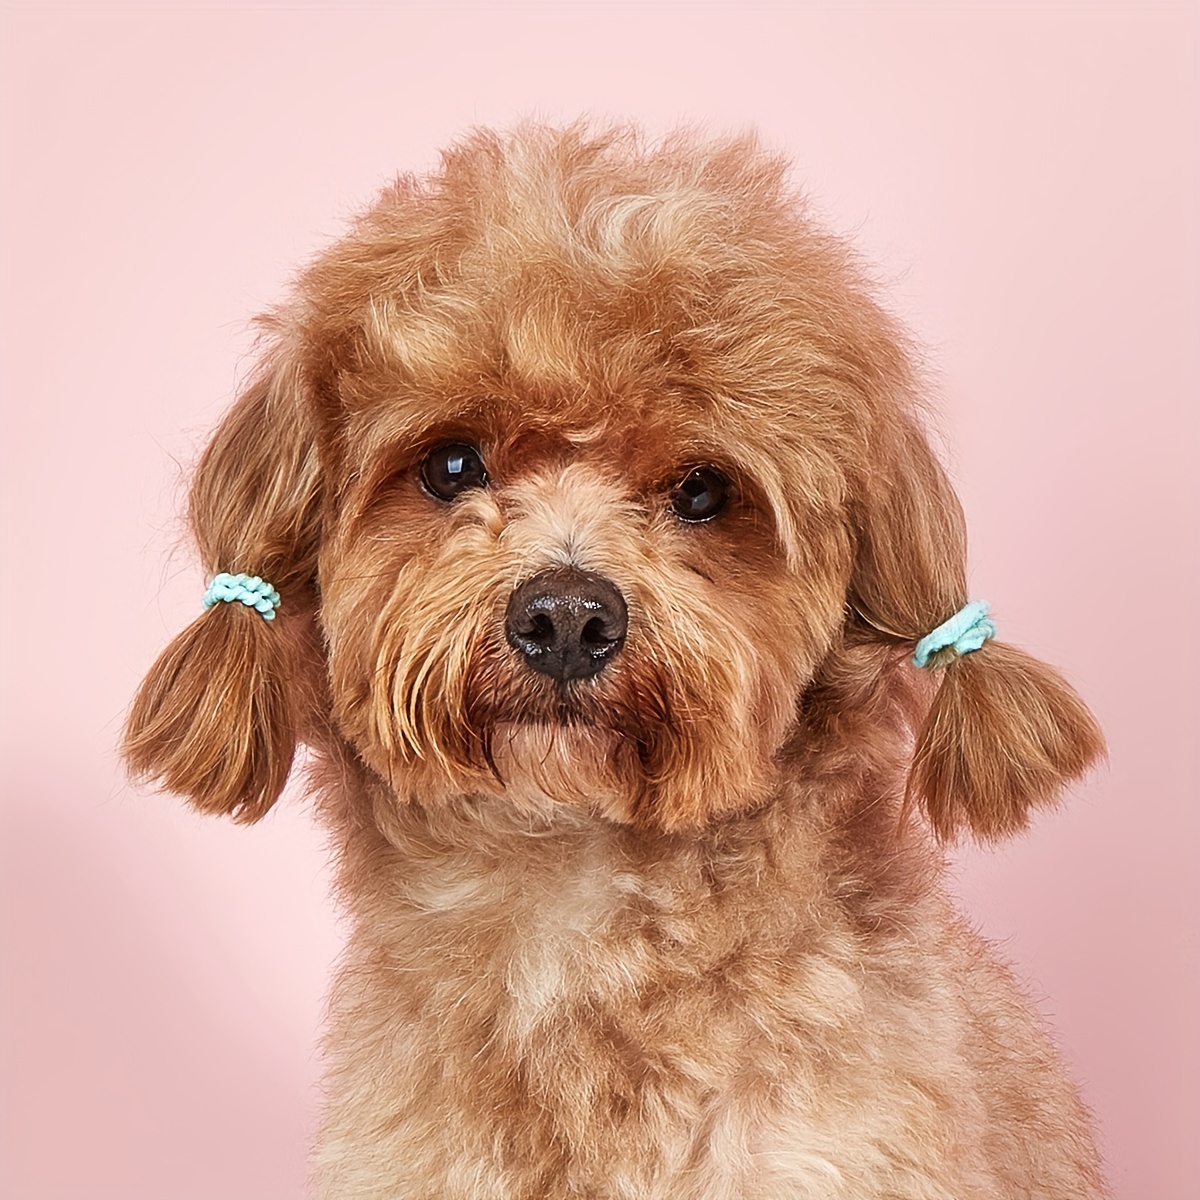 30 unidades: 15 pares de lazos para perros, bonitos lazos para el pelo de  cachorros con bandas de goma, lazos multicolor hechos a mano para mascotas